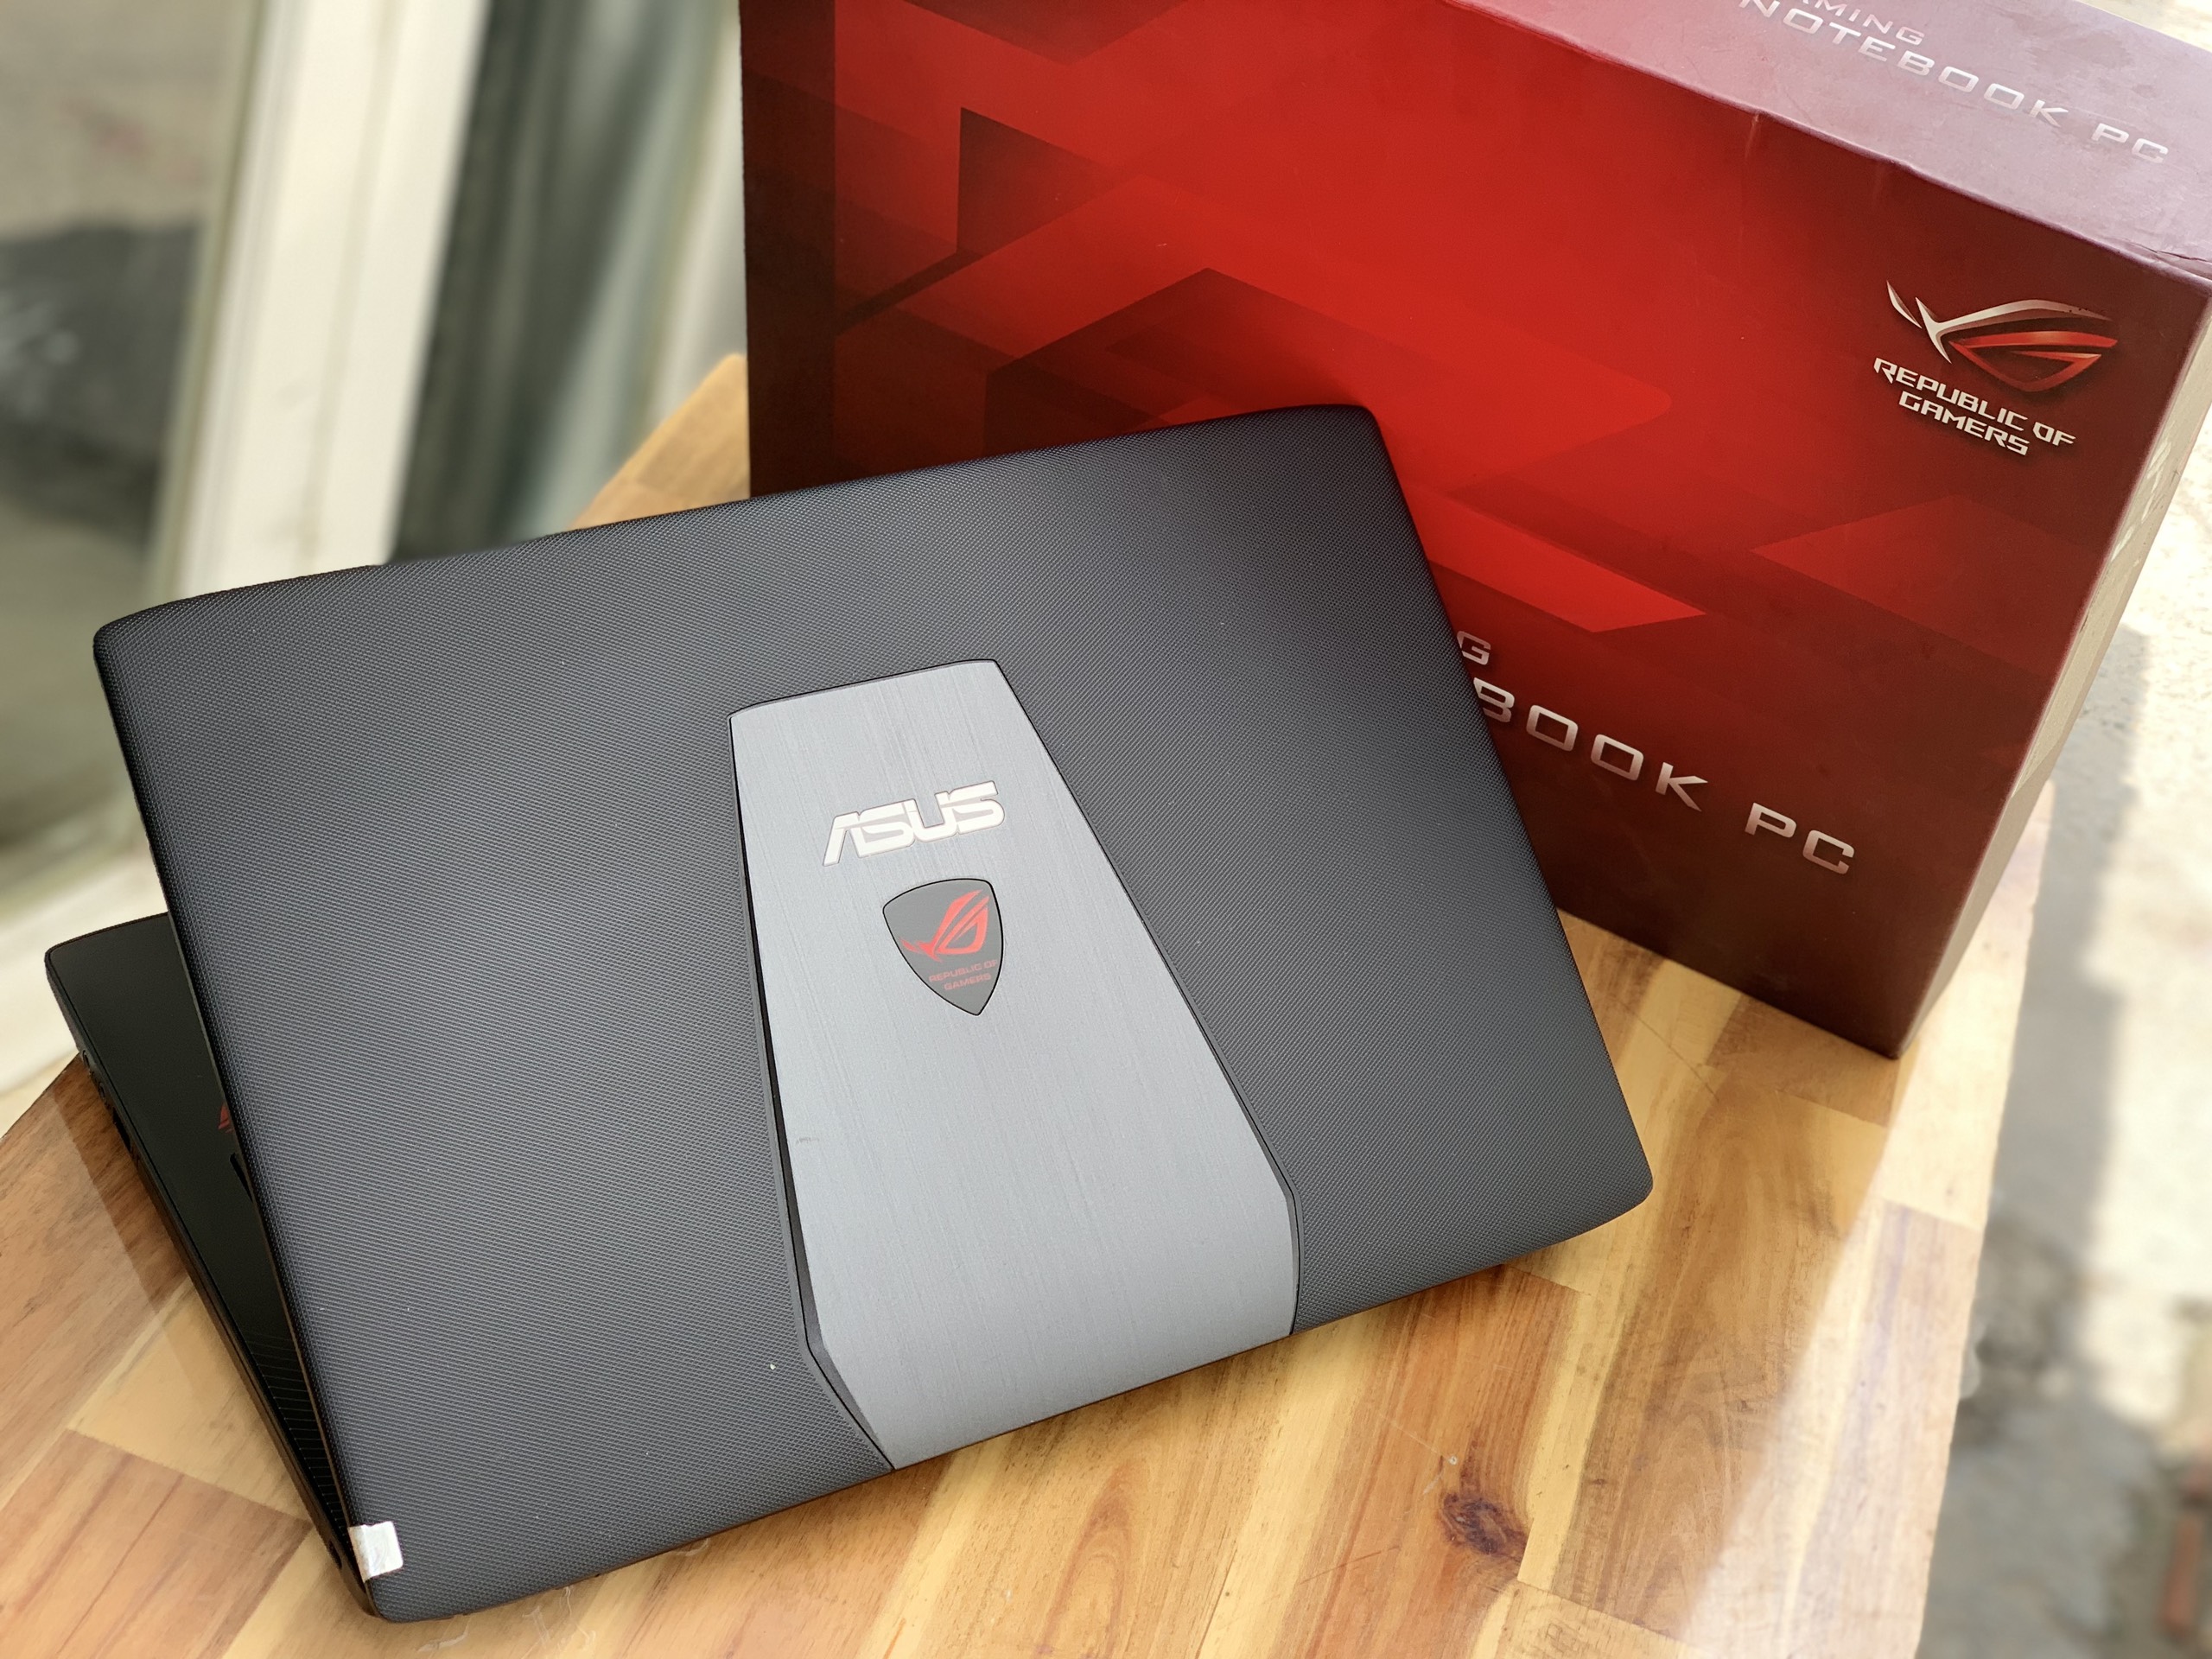 Laptop Asus Rog Gl552Jx, I5 4200H 8G Ssd240 Vga Rời Gtx950M 4G Led Đỏ Full  Box Giá Rẻ